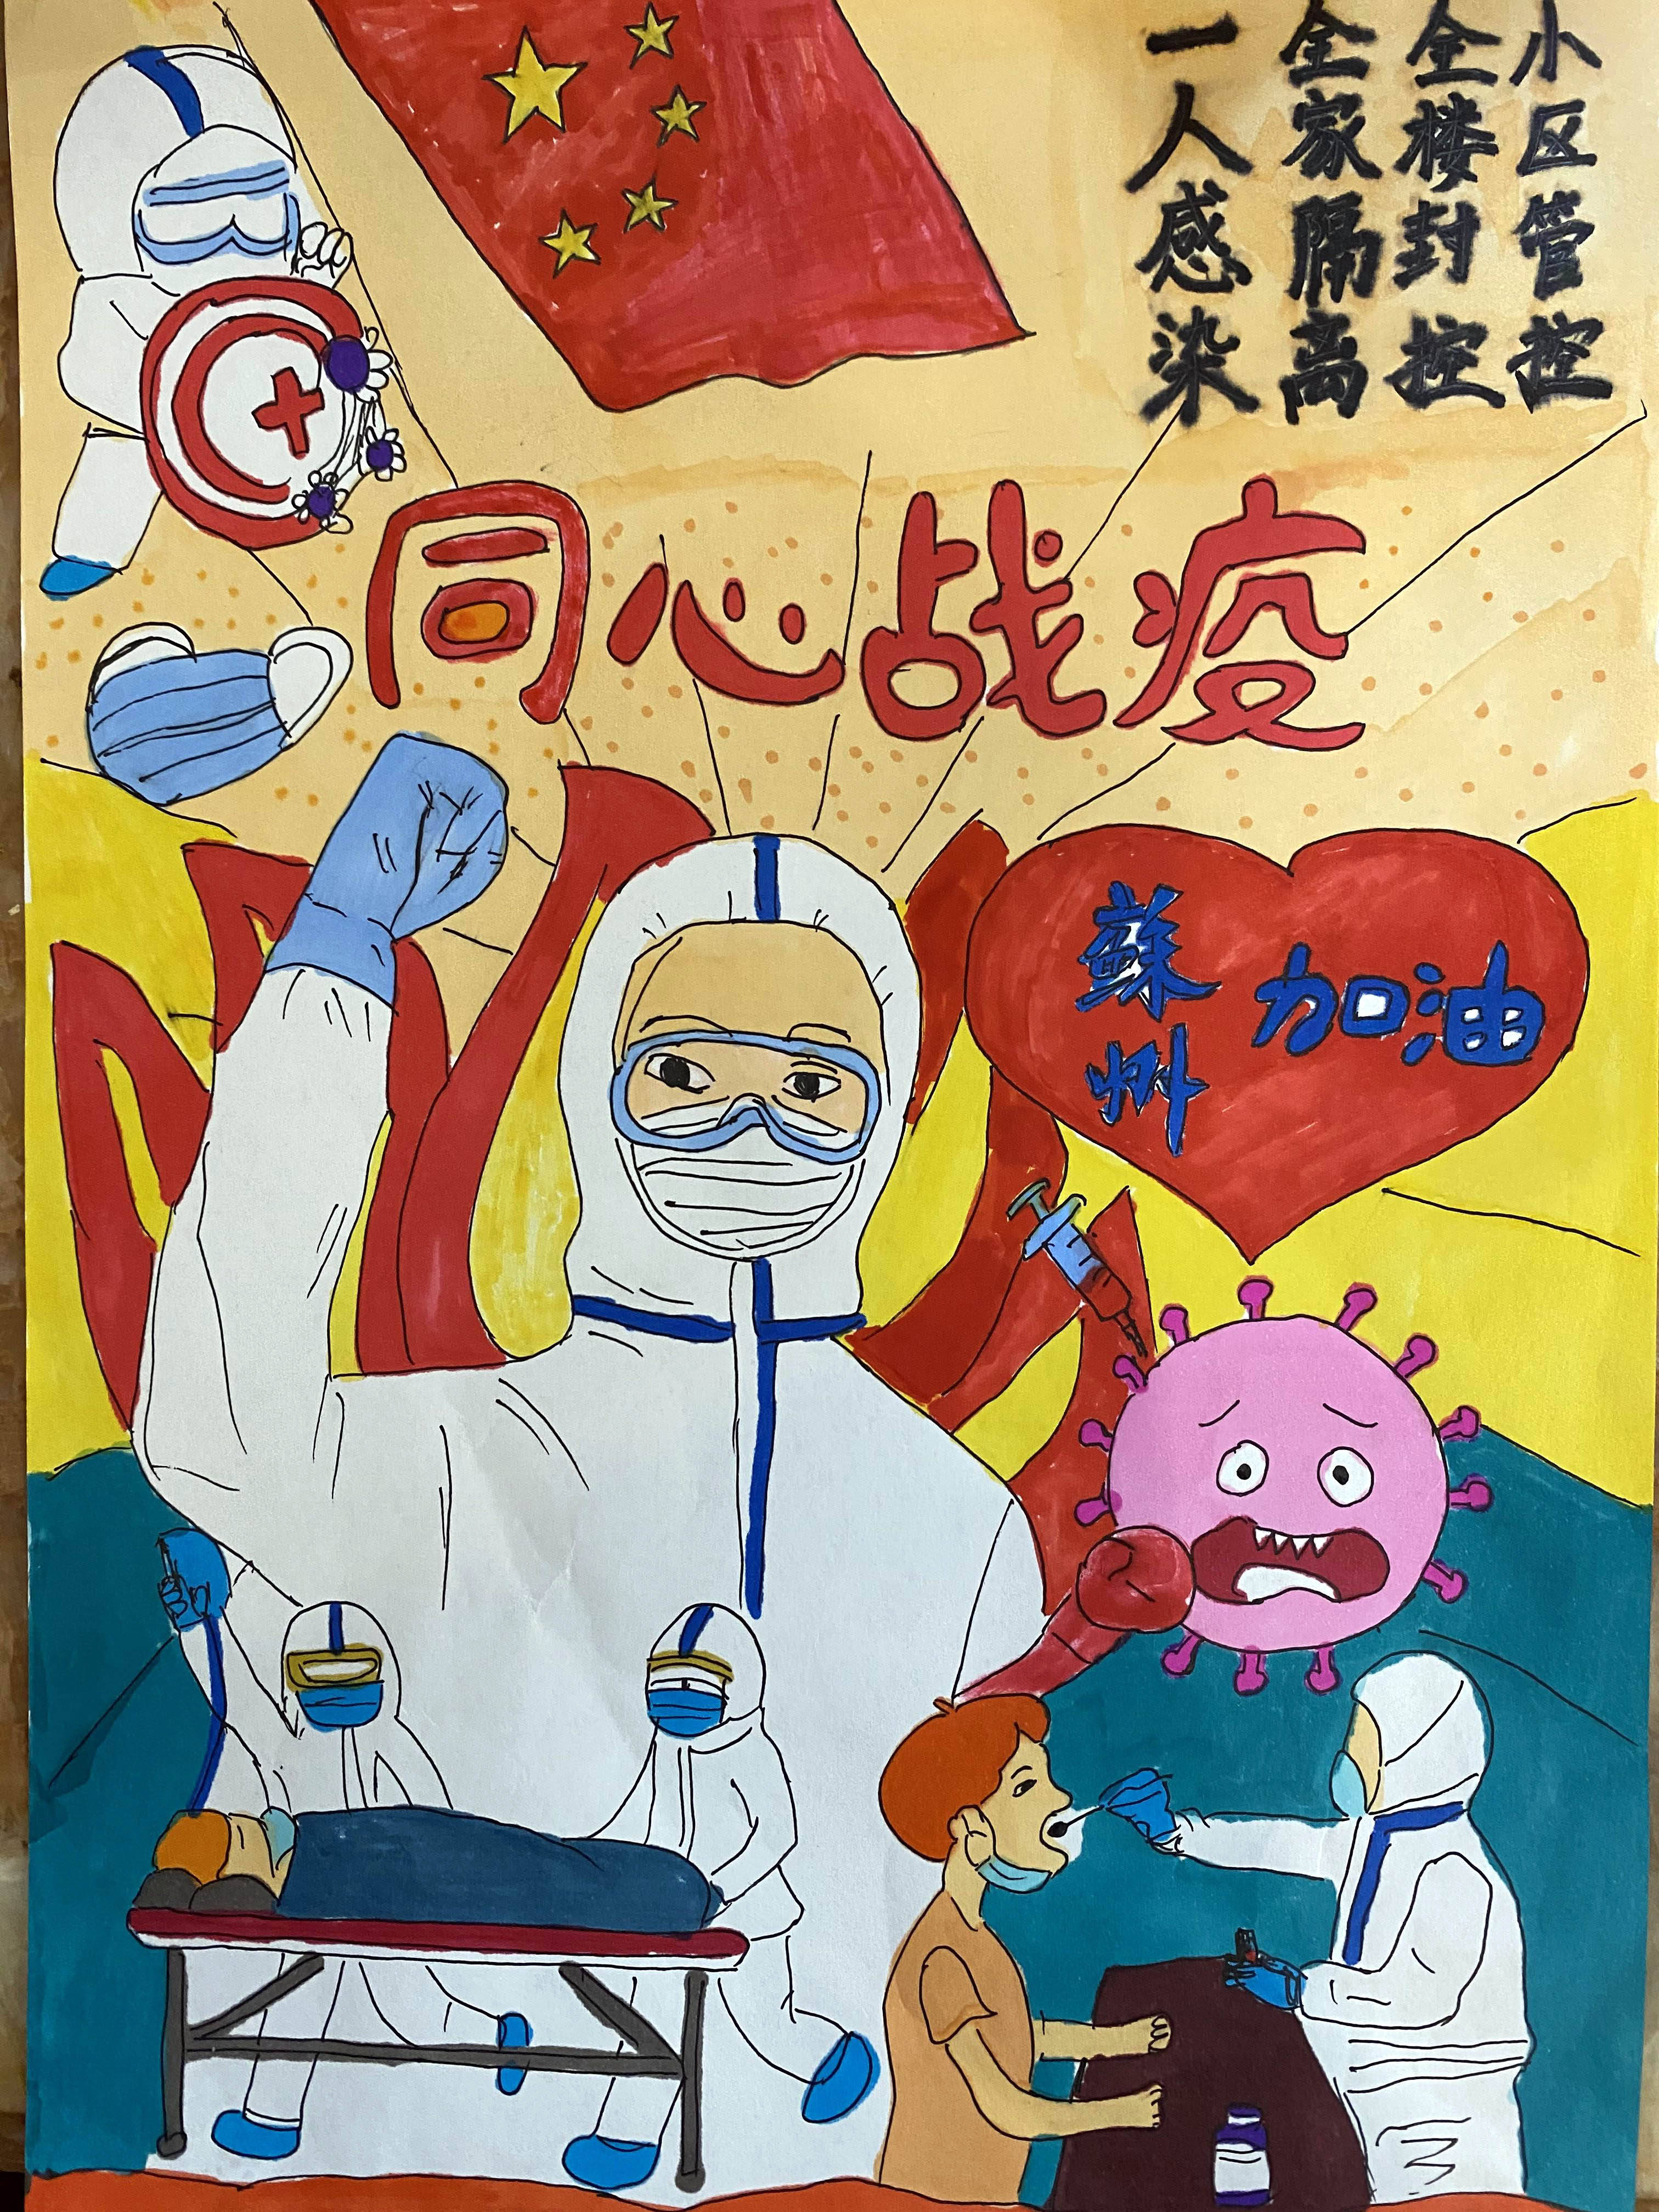 苏州平江分校小学生绘制防控知识宣传小报为抗击疫情加油助力